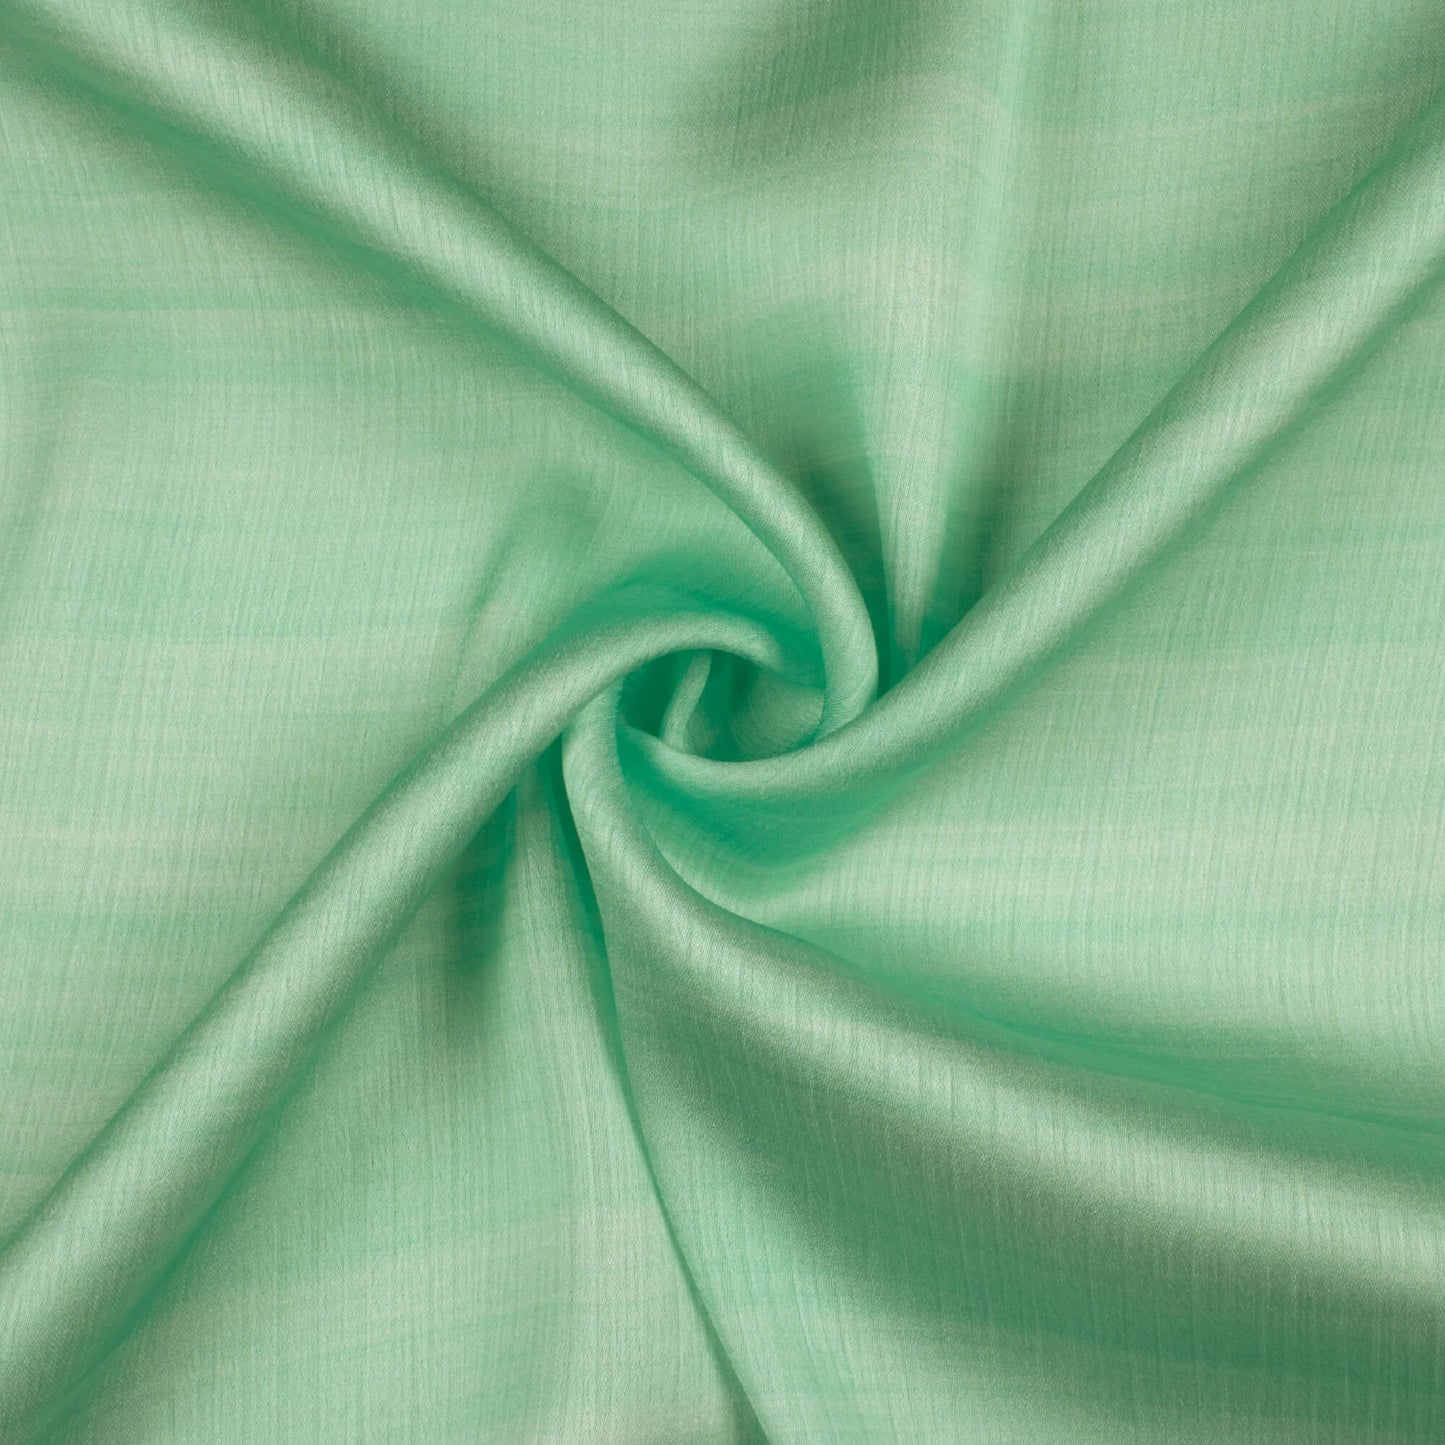 Pastel Green Texture Pattern Digital Print Chiffon Satin Fabric